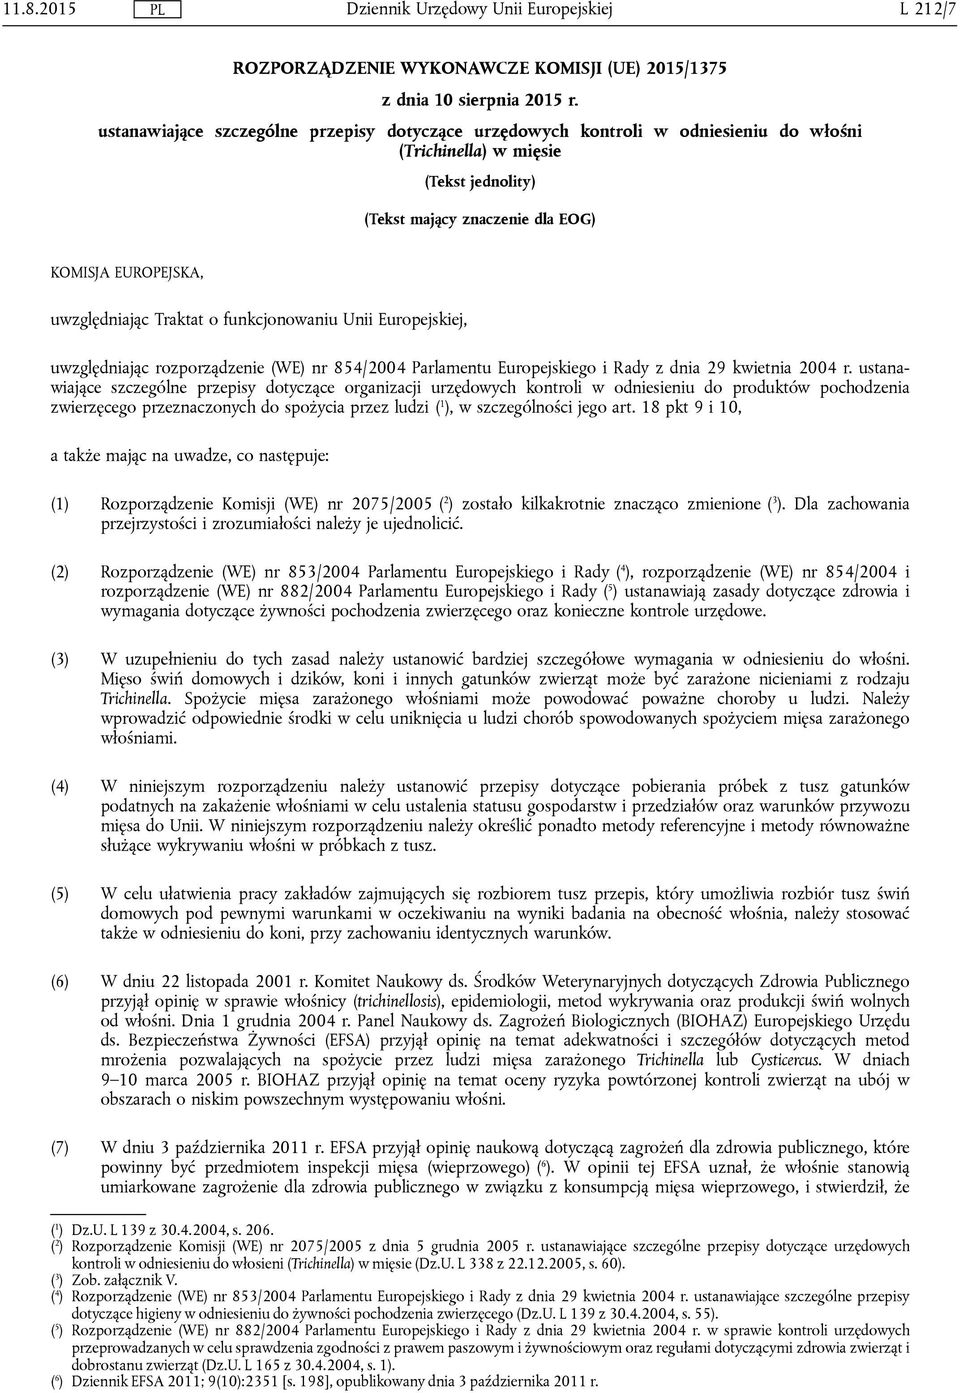 Traktat o funkcjonowaniu Unii Europejskiej, uwzględniając rozporządzenie (WE) nr 854/2004 Parlamentu Europejskiego i Rady z dnia 29 kwietnia 2004 r.